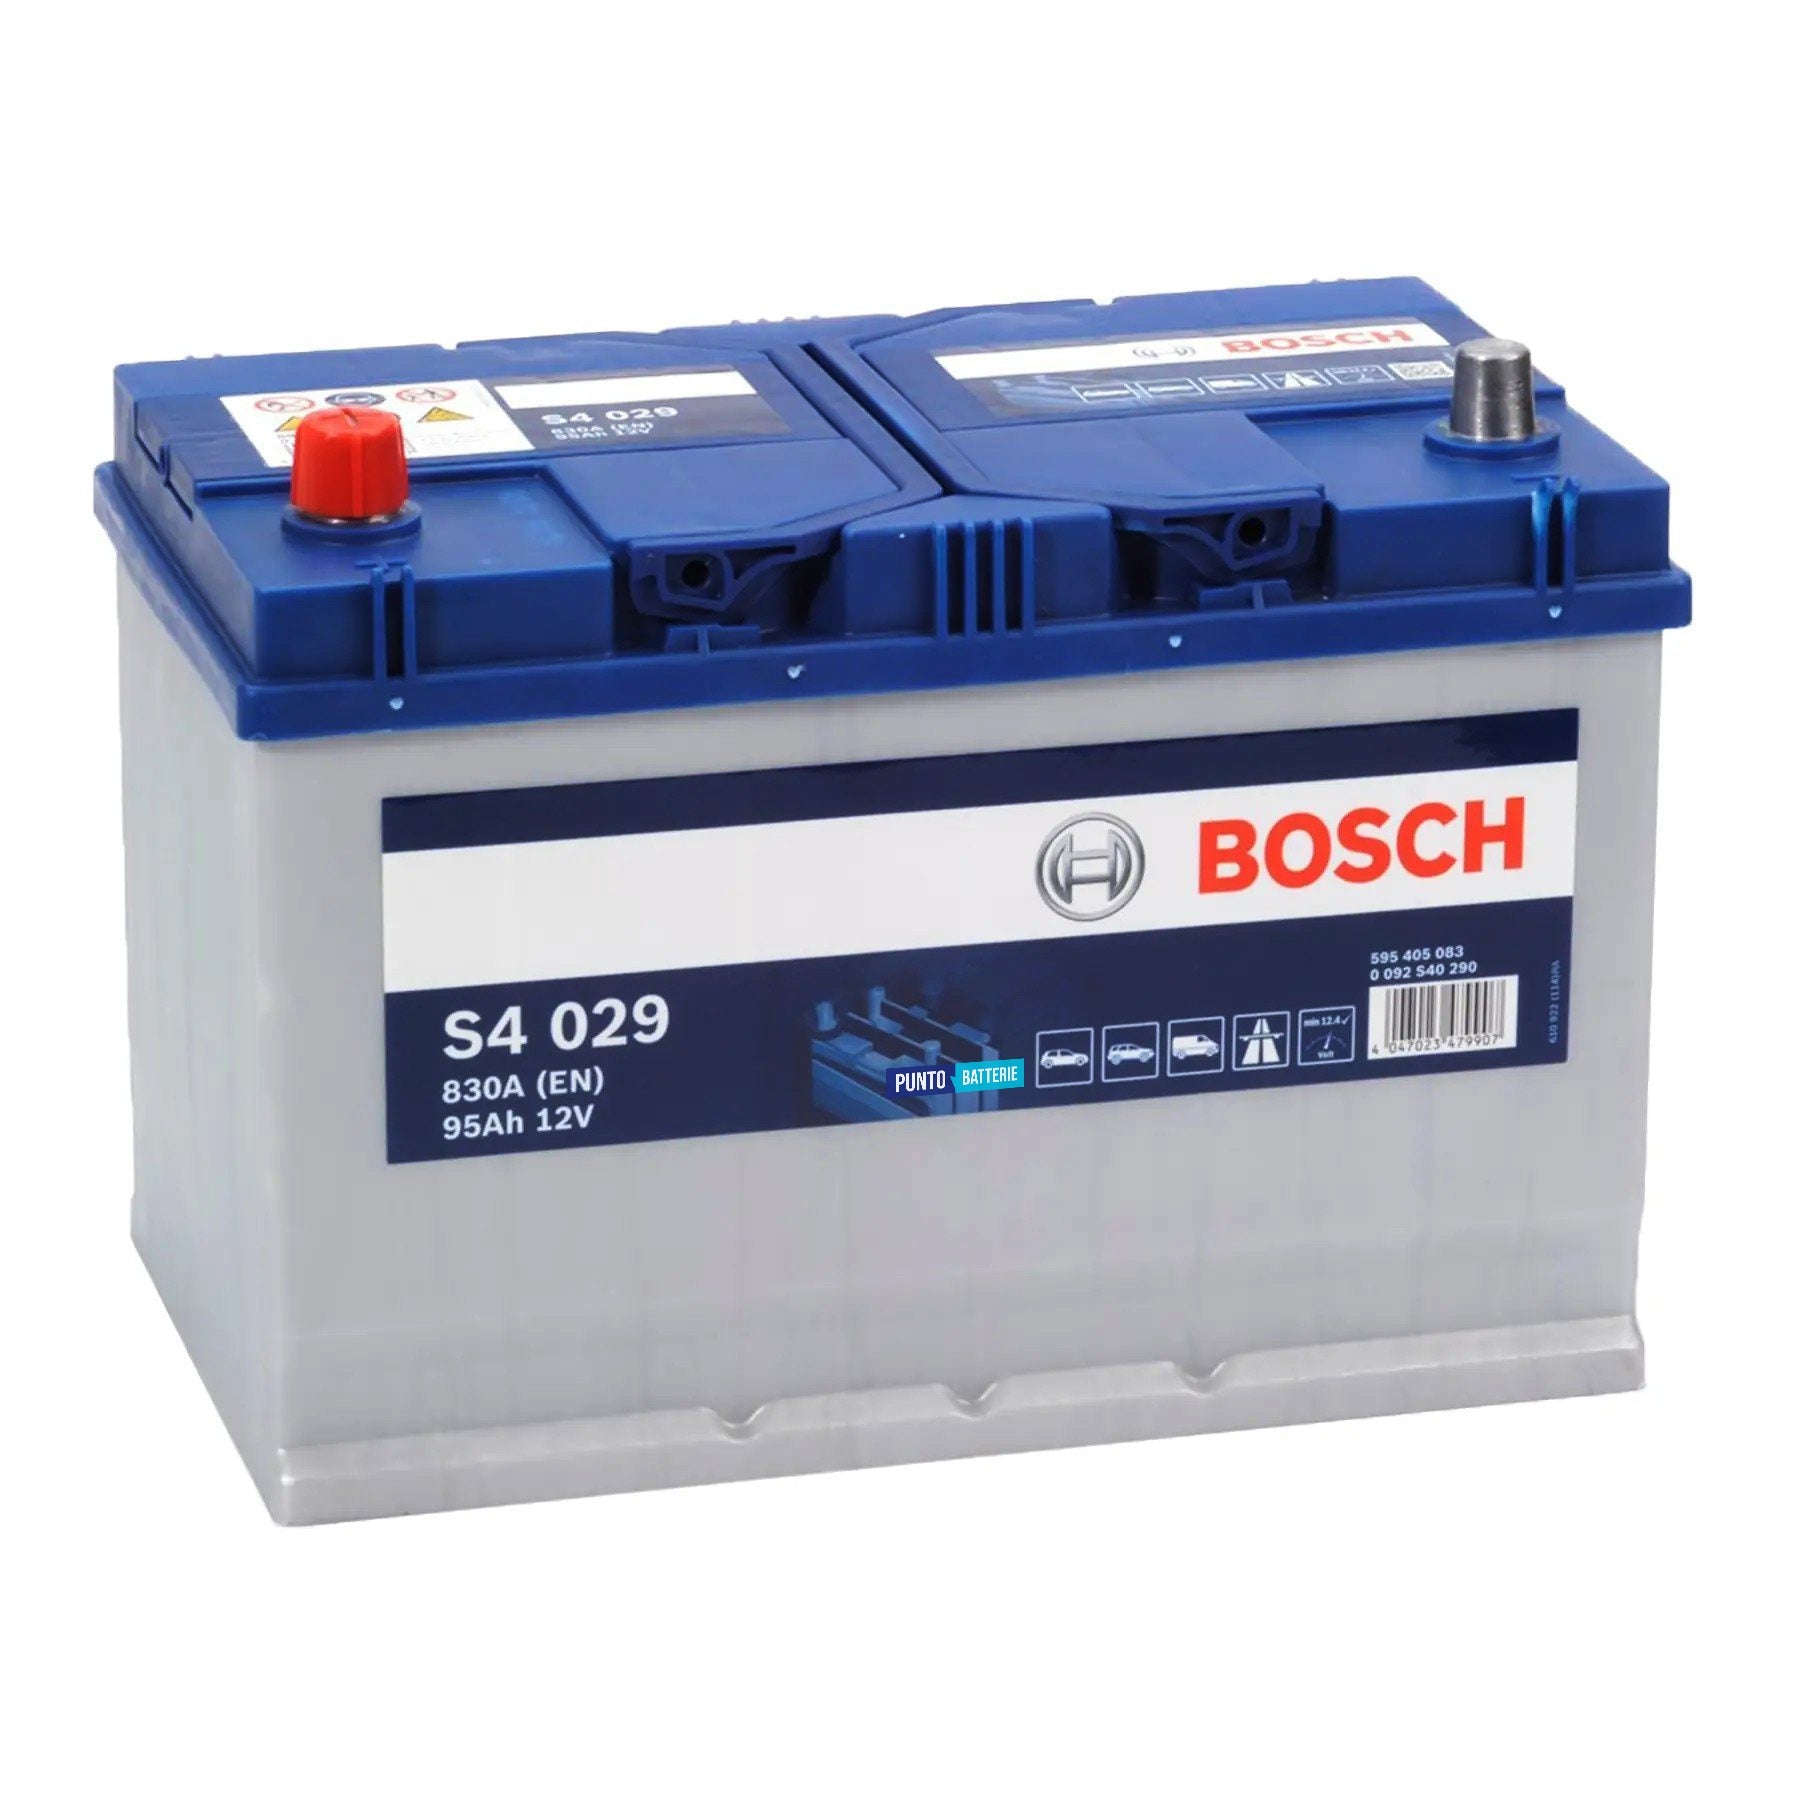 Batteria originale Bosch S4 S4 029, dimensioni 306 x 173 x 225, polo positivo a sinistra, 12 volt, 95 amperora, 830 ampere. Batteria per auto e veicoli leggeri.